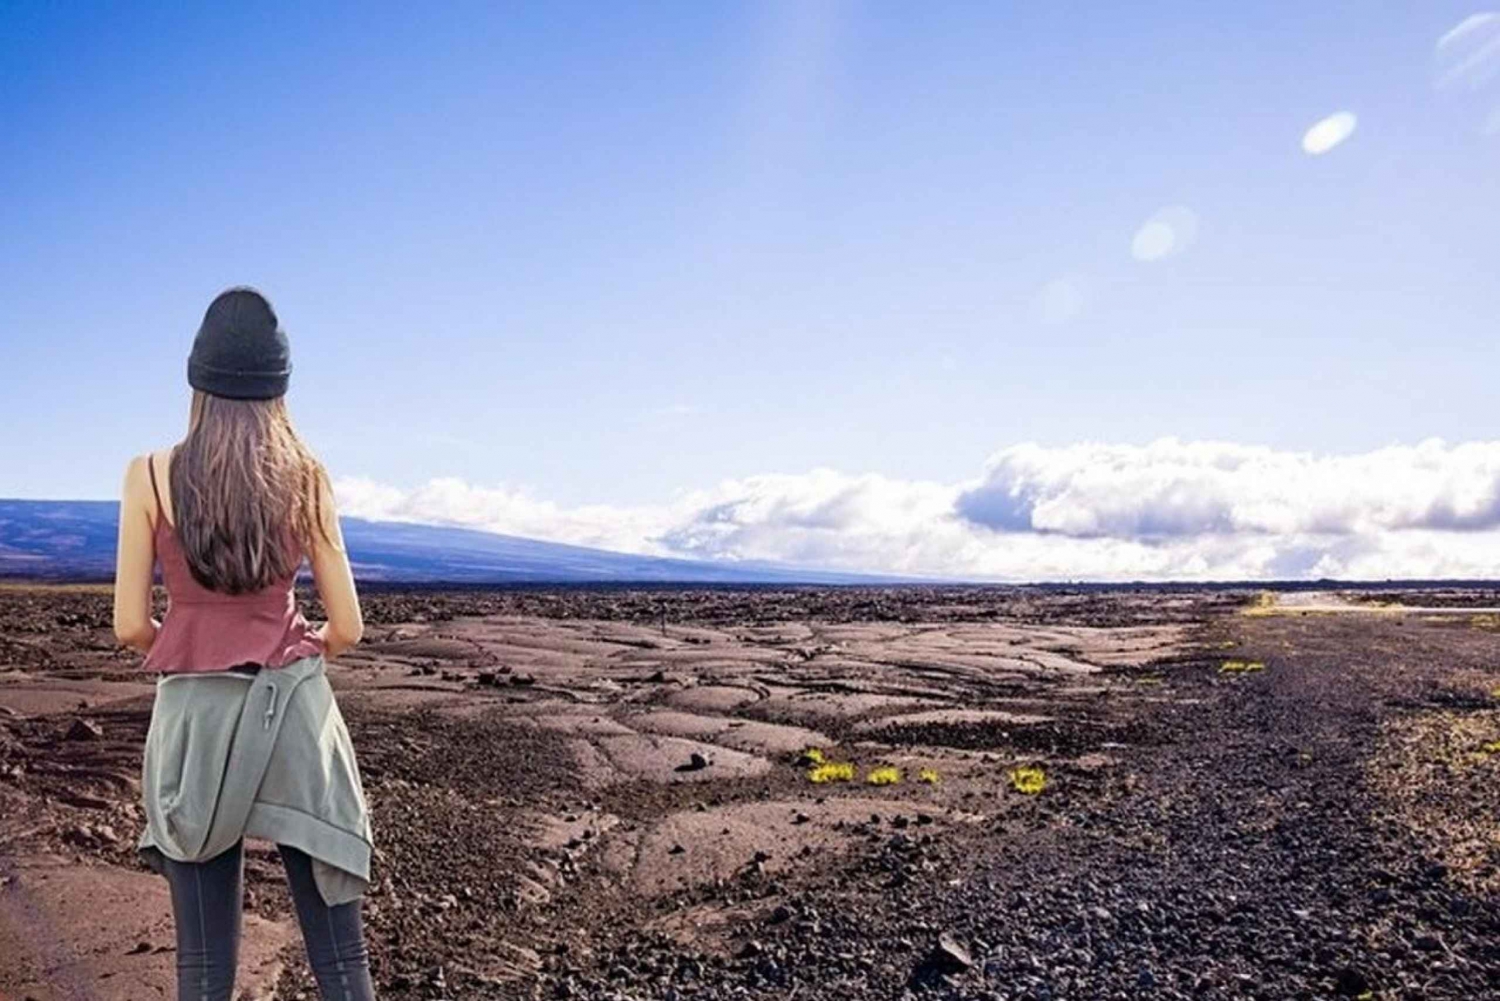 Excursão de um dia ao vulcão Hilo, no Havaí, saindo da ilha de Oahu